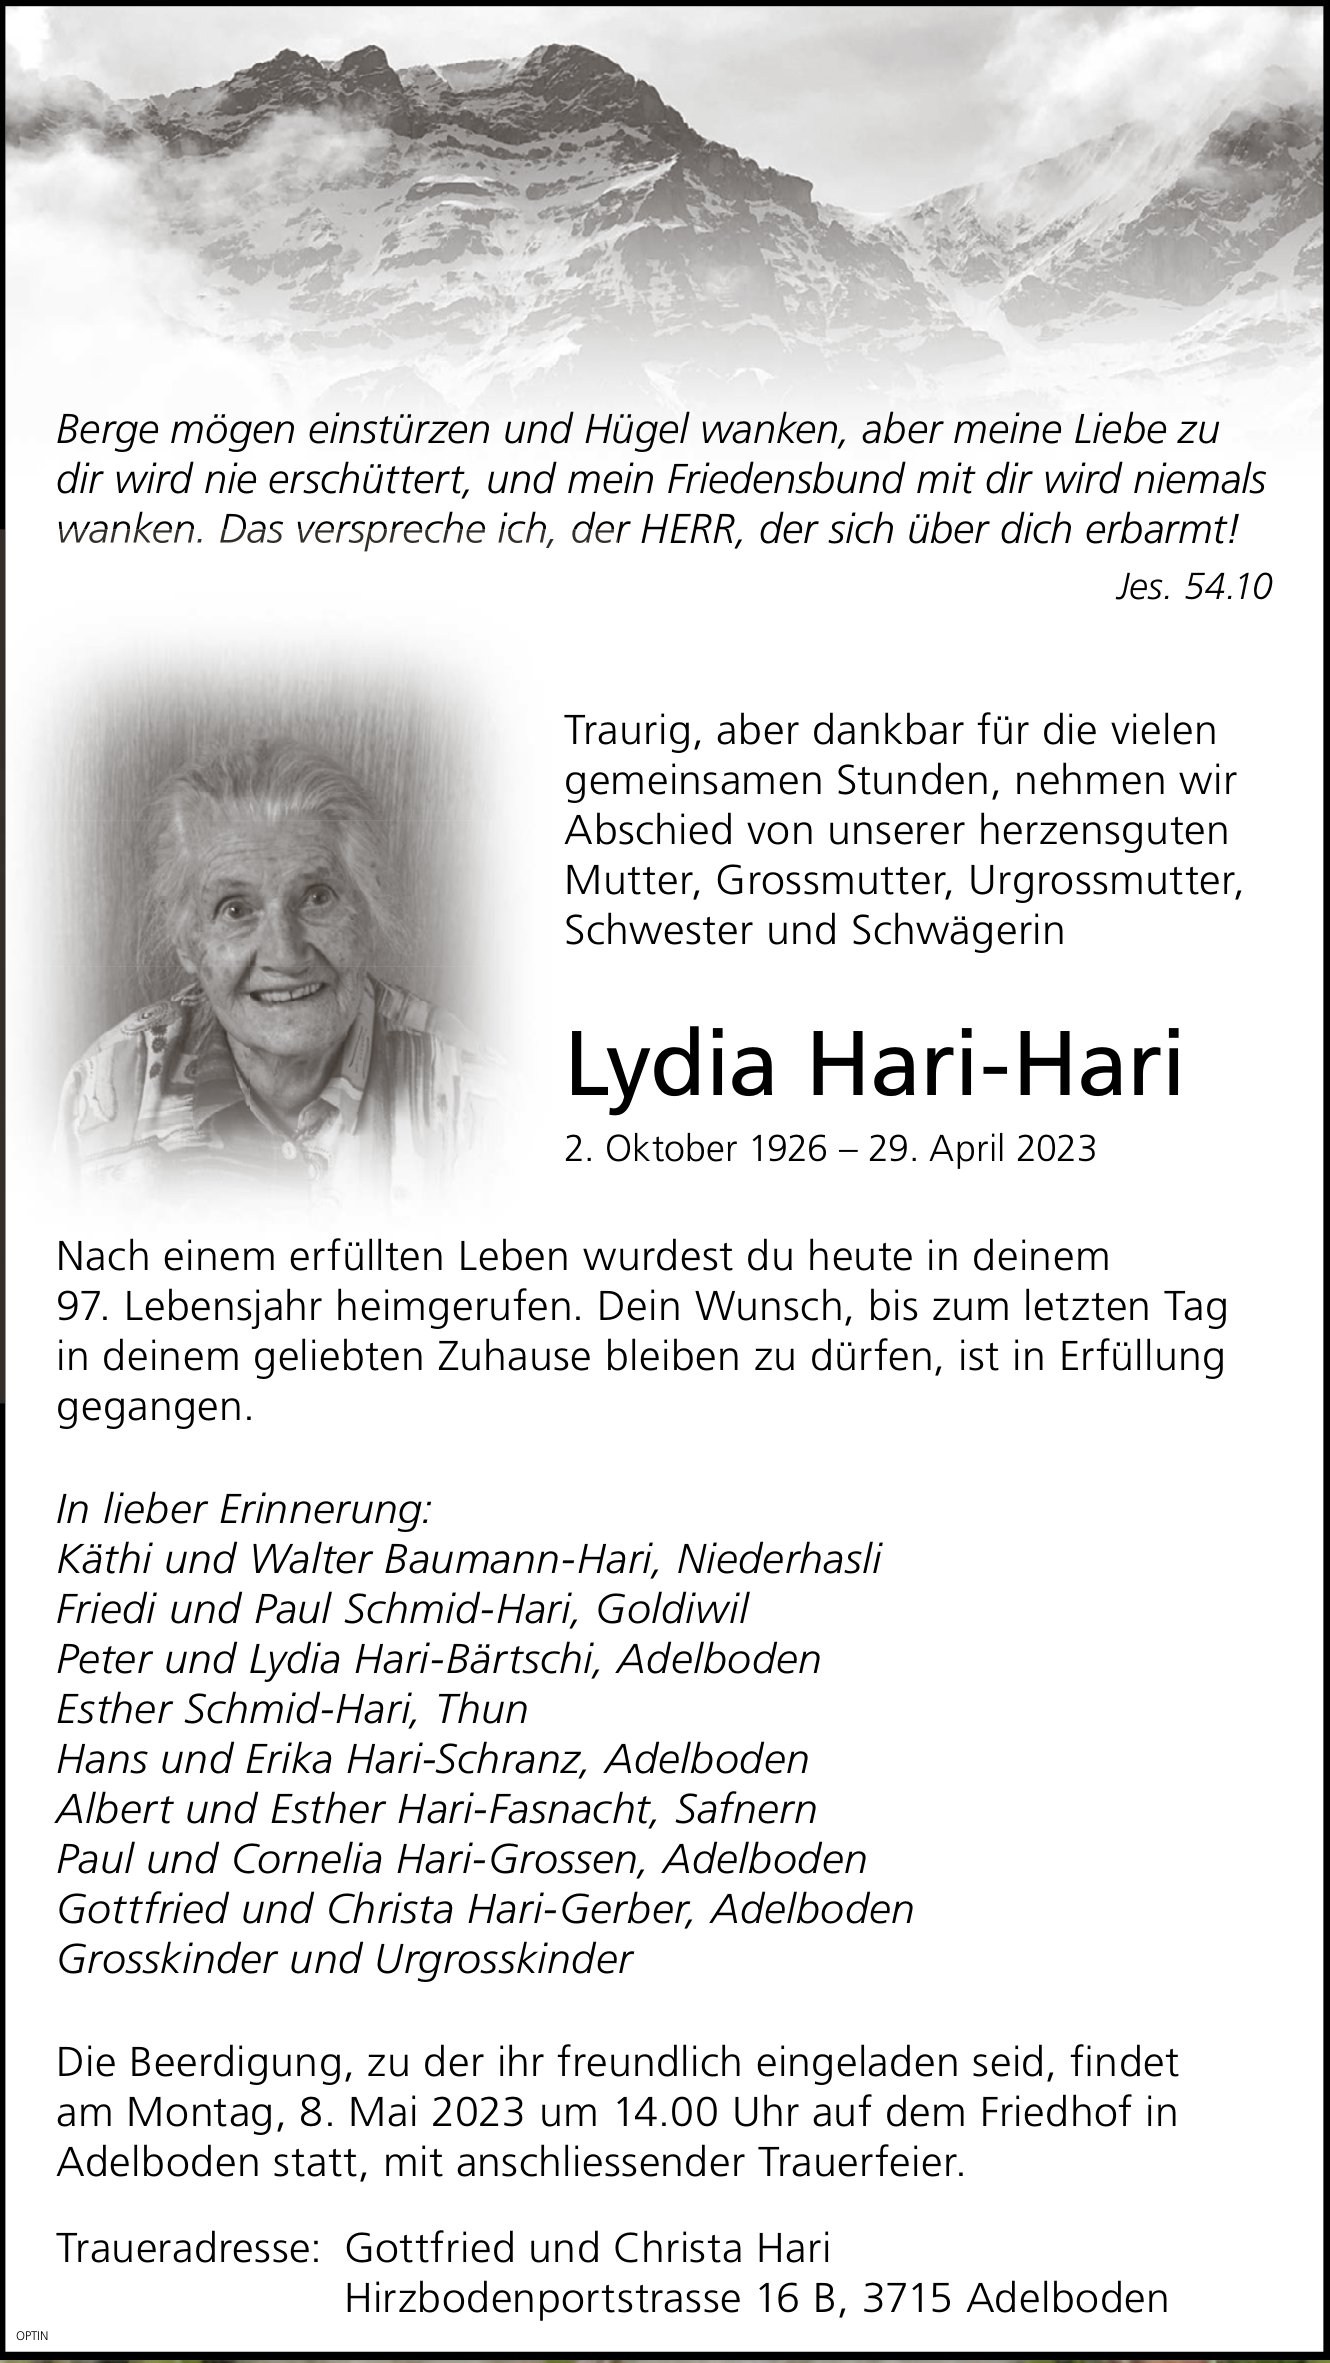 Lydia Hari-Hari, April 2023 / TA